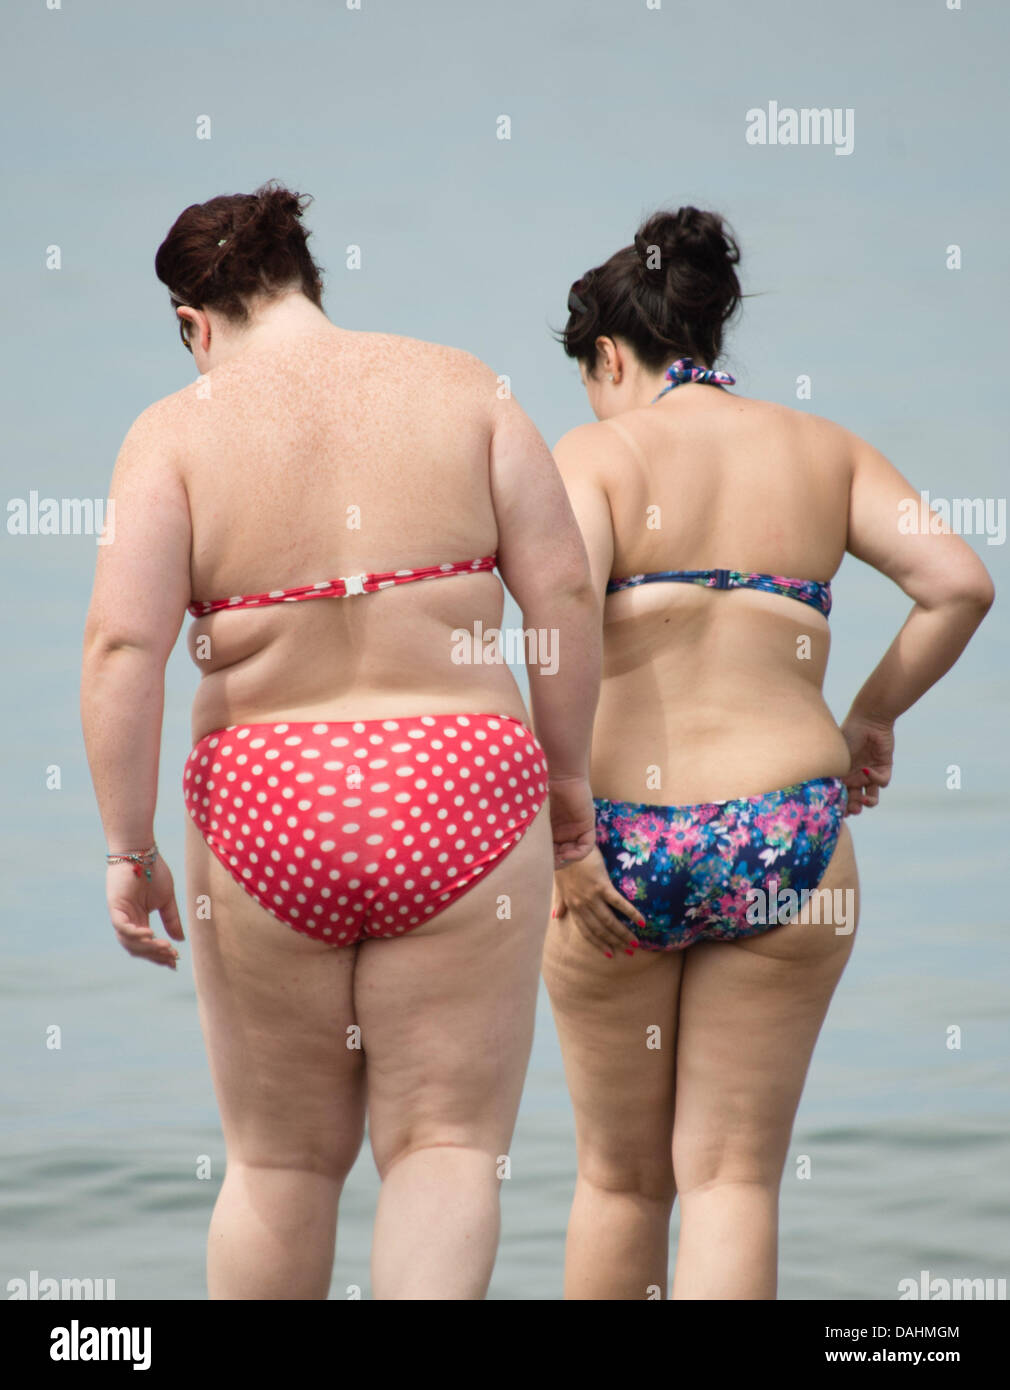 Bikini im fette menschen Warum ziehen